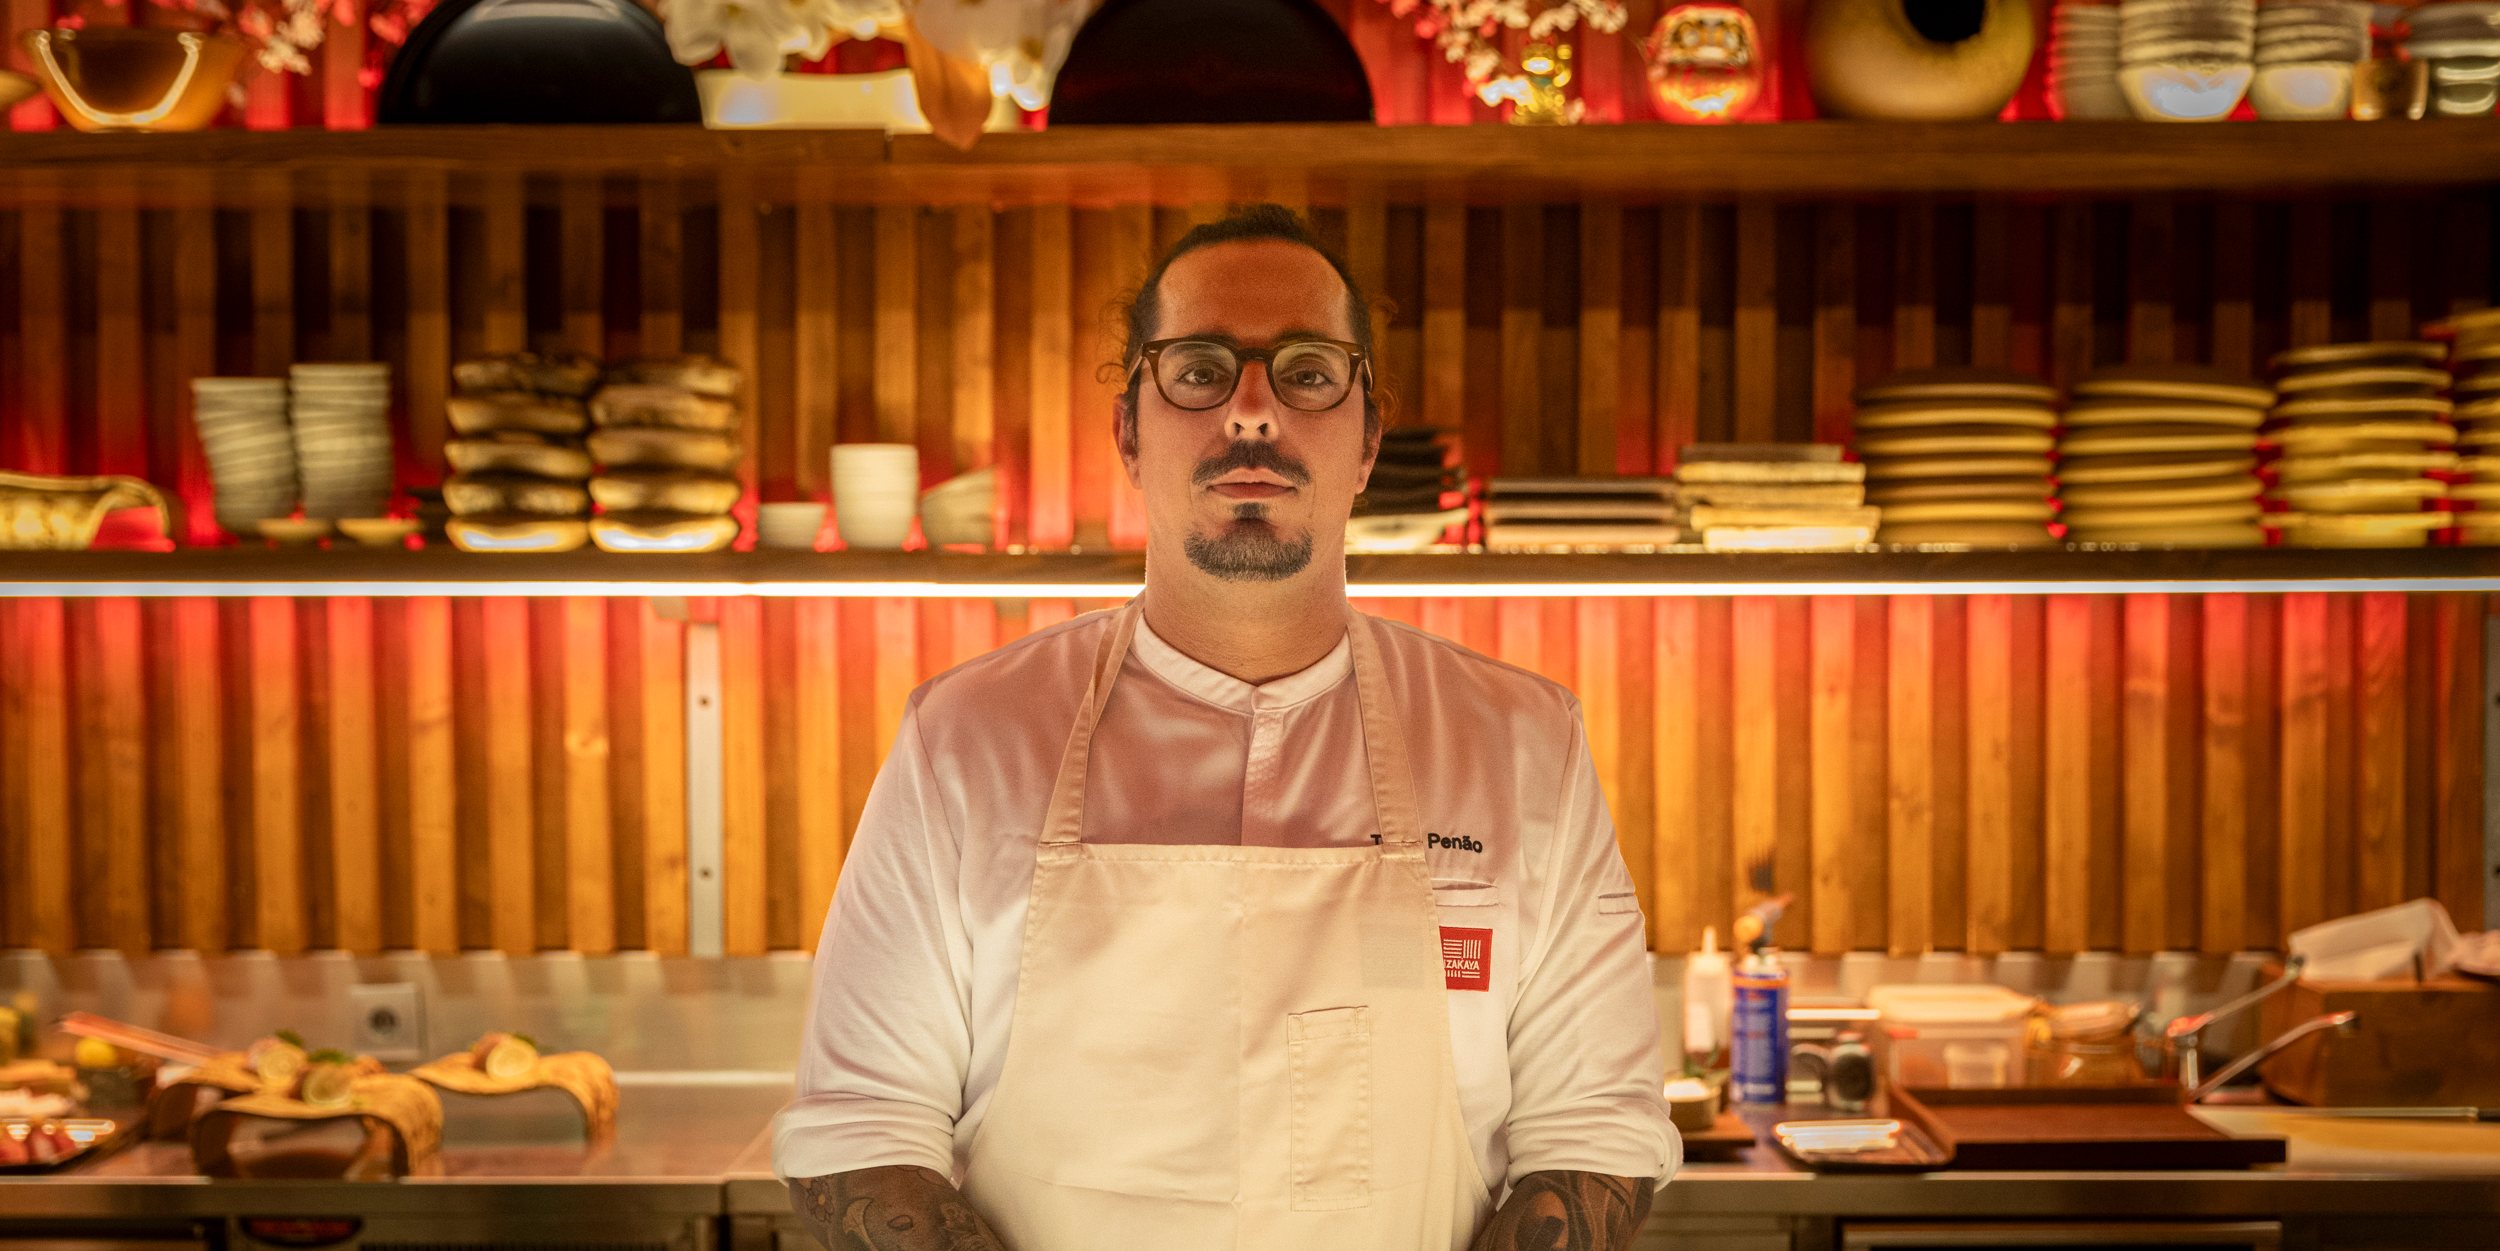 O chef Tiago Penão, de 35 anos, tem dois restaurantes de cozinha japonesa em Cascais: o Kappo e o Izakaya